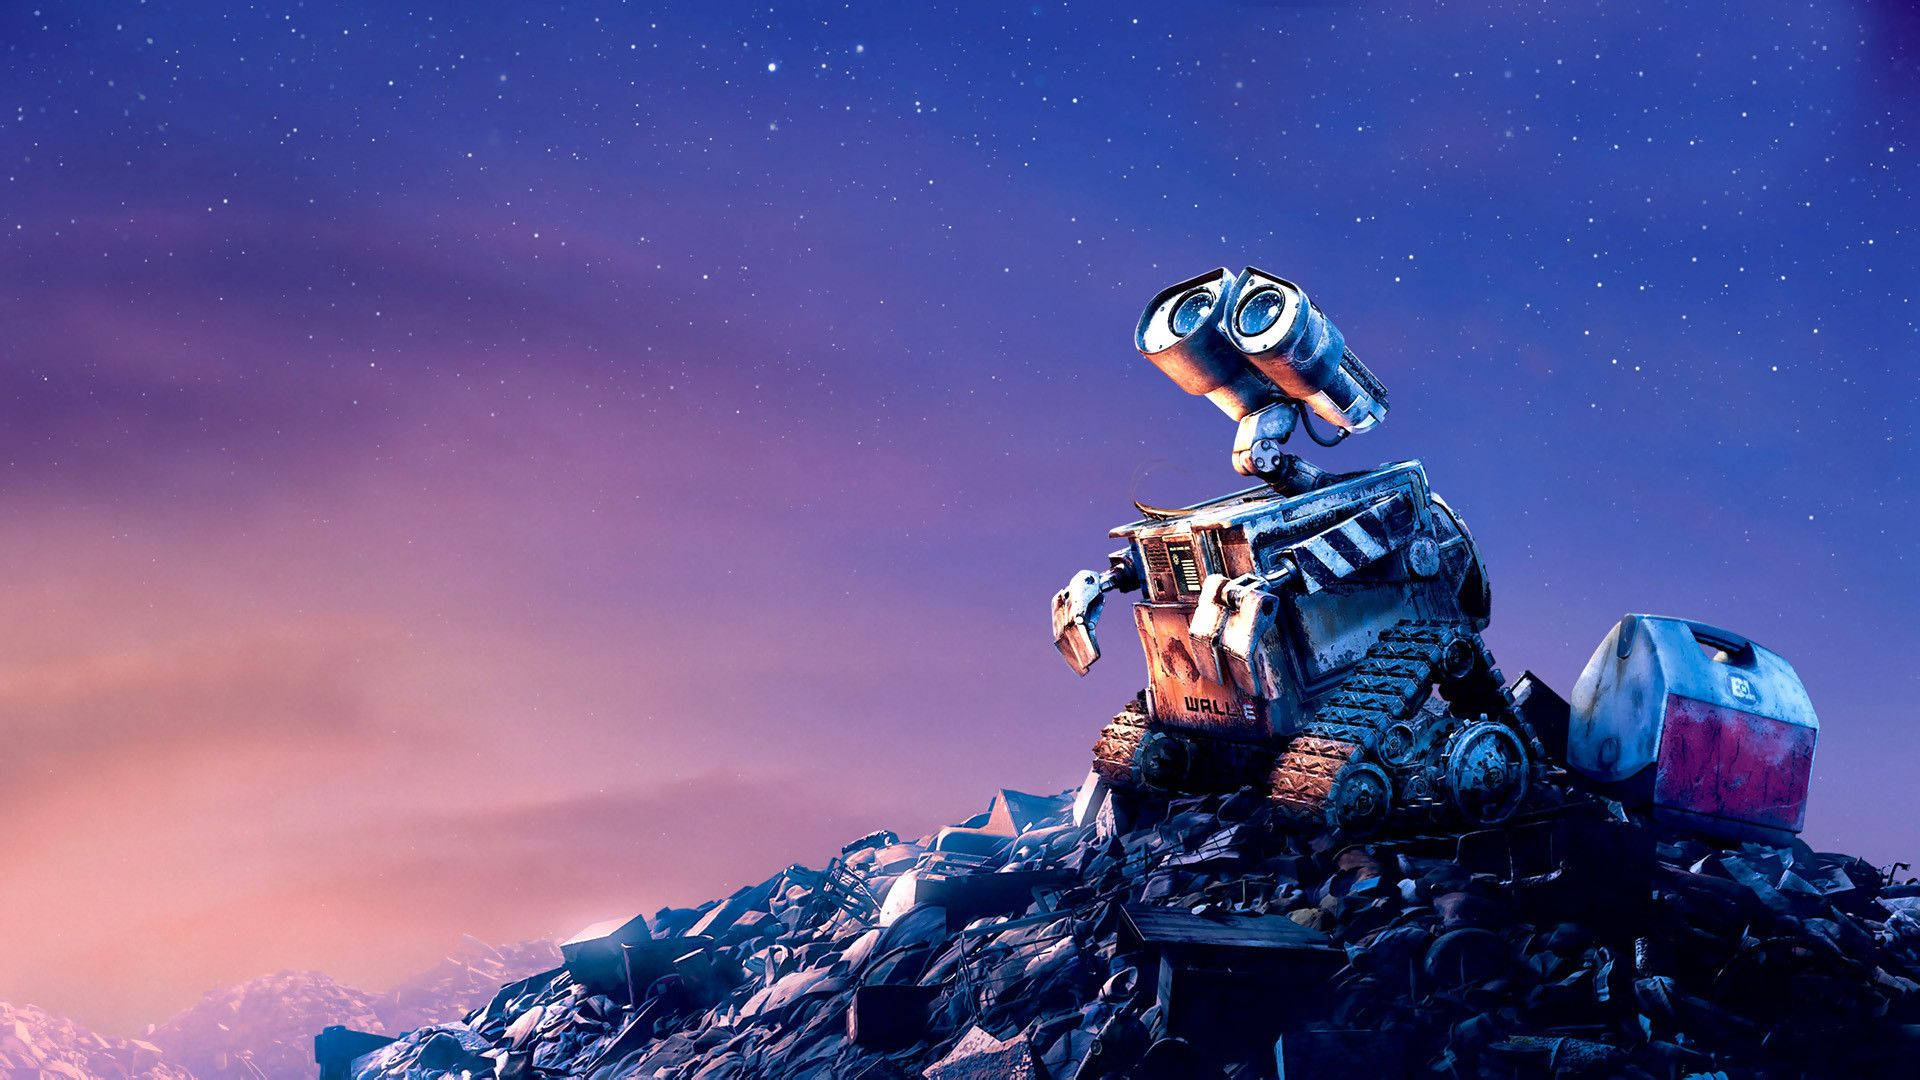 Wall-e Movie Digital Cover